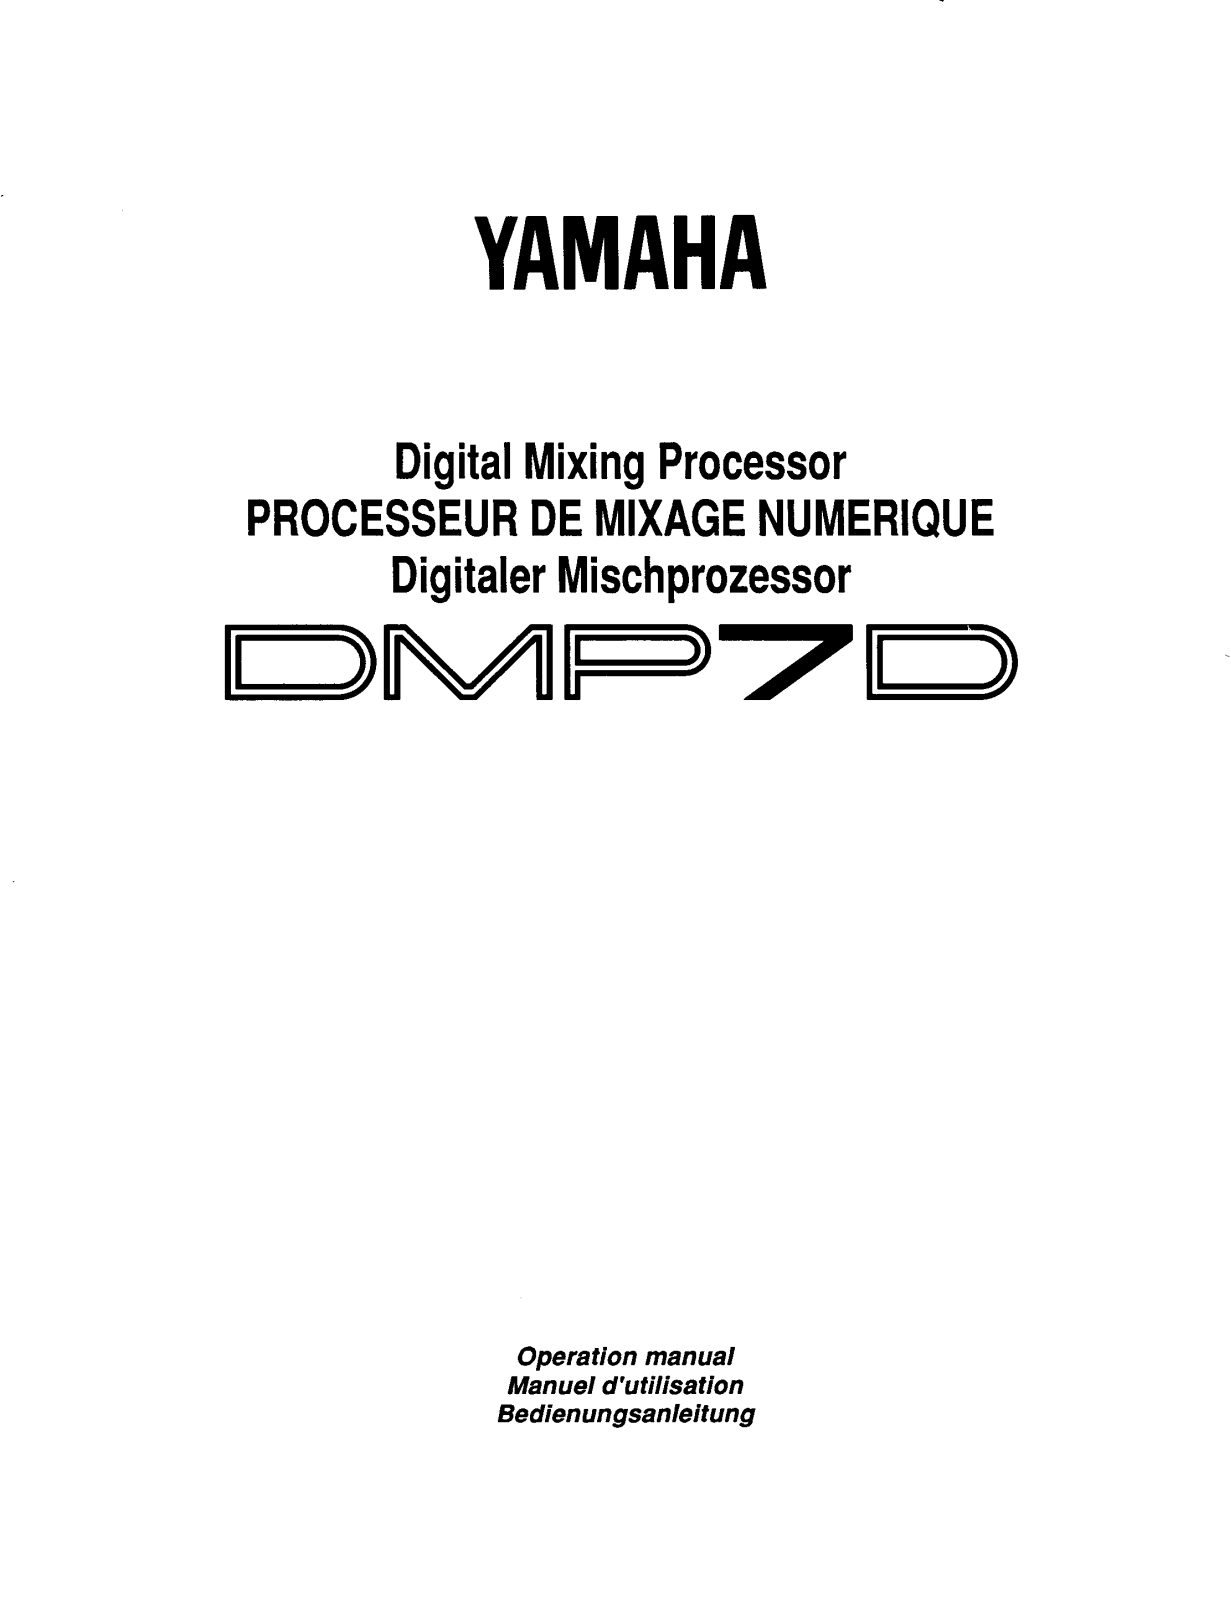 Yamaha DMP7D User Manual